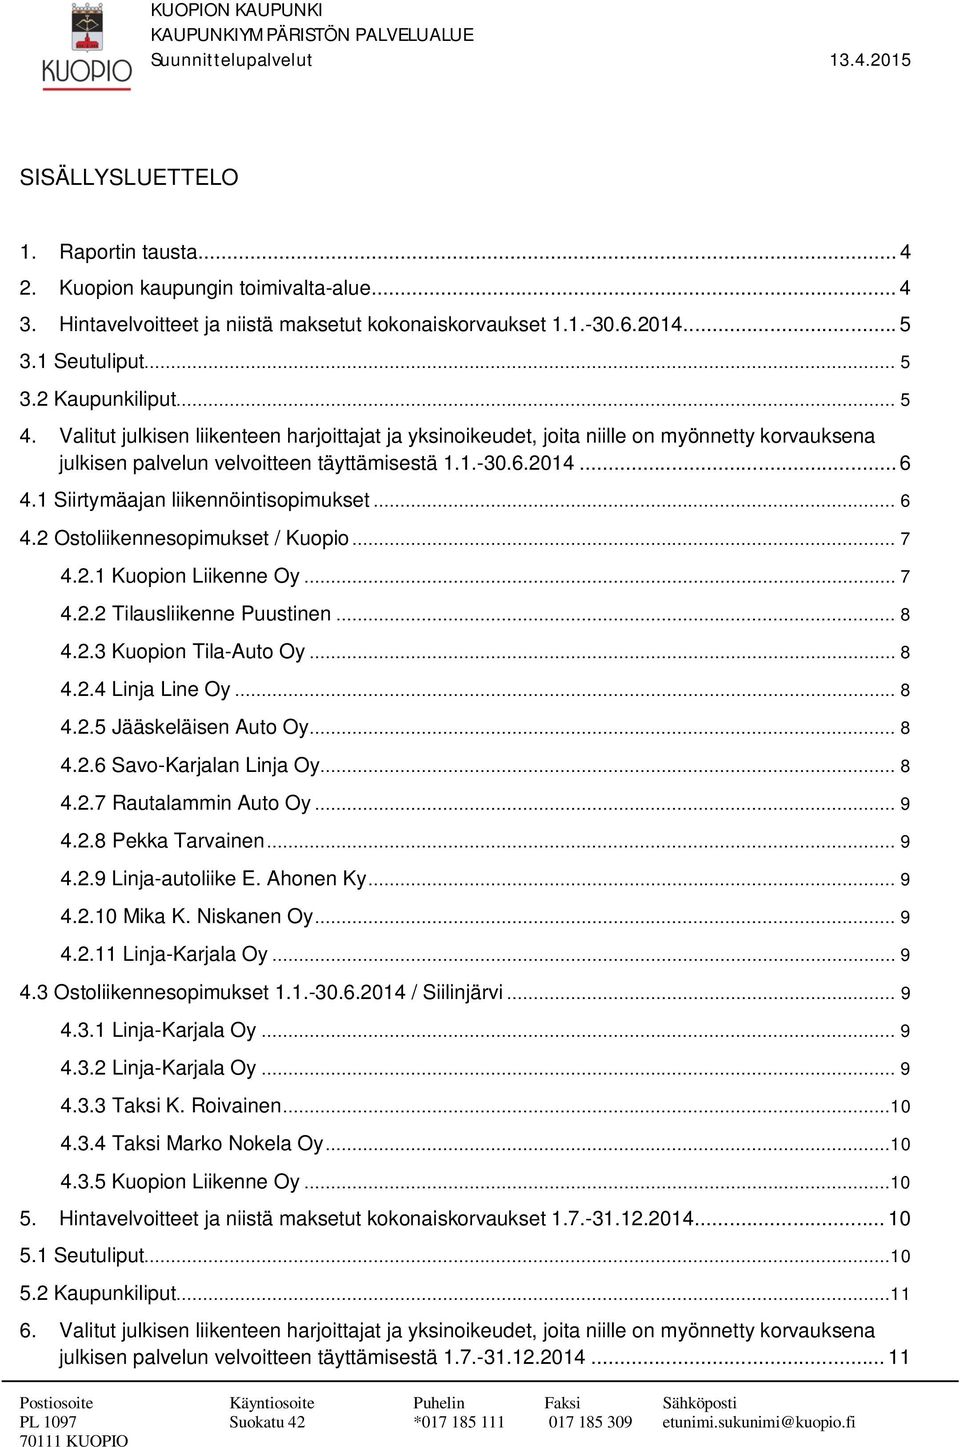 1 Siirtymäajan liikennöintisopimukset... 6 4.2 Ostoliikennesopimukset / Kuopio... 7 4.2.1 Kuopion Liikenne Oy... 7 4.2.2 Tilausliikenne Puustinen... 8 4.2.3 Kuopion Tila-Auto Oy... 8 4.2.4 Linja Line Oy.